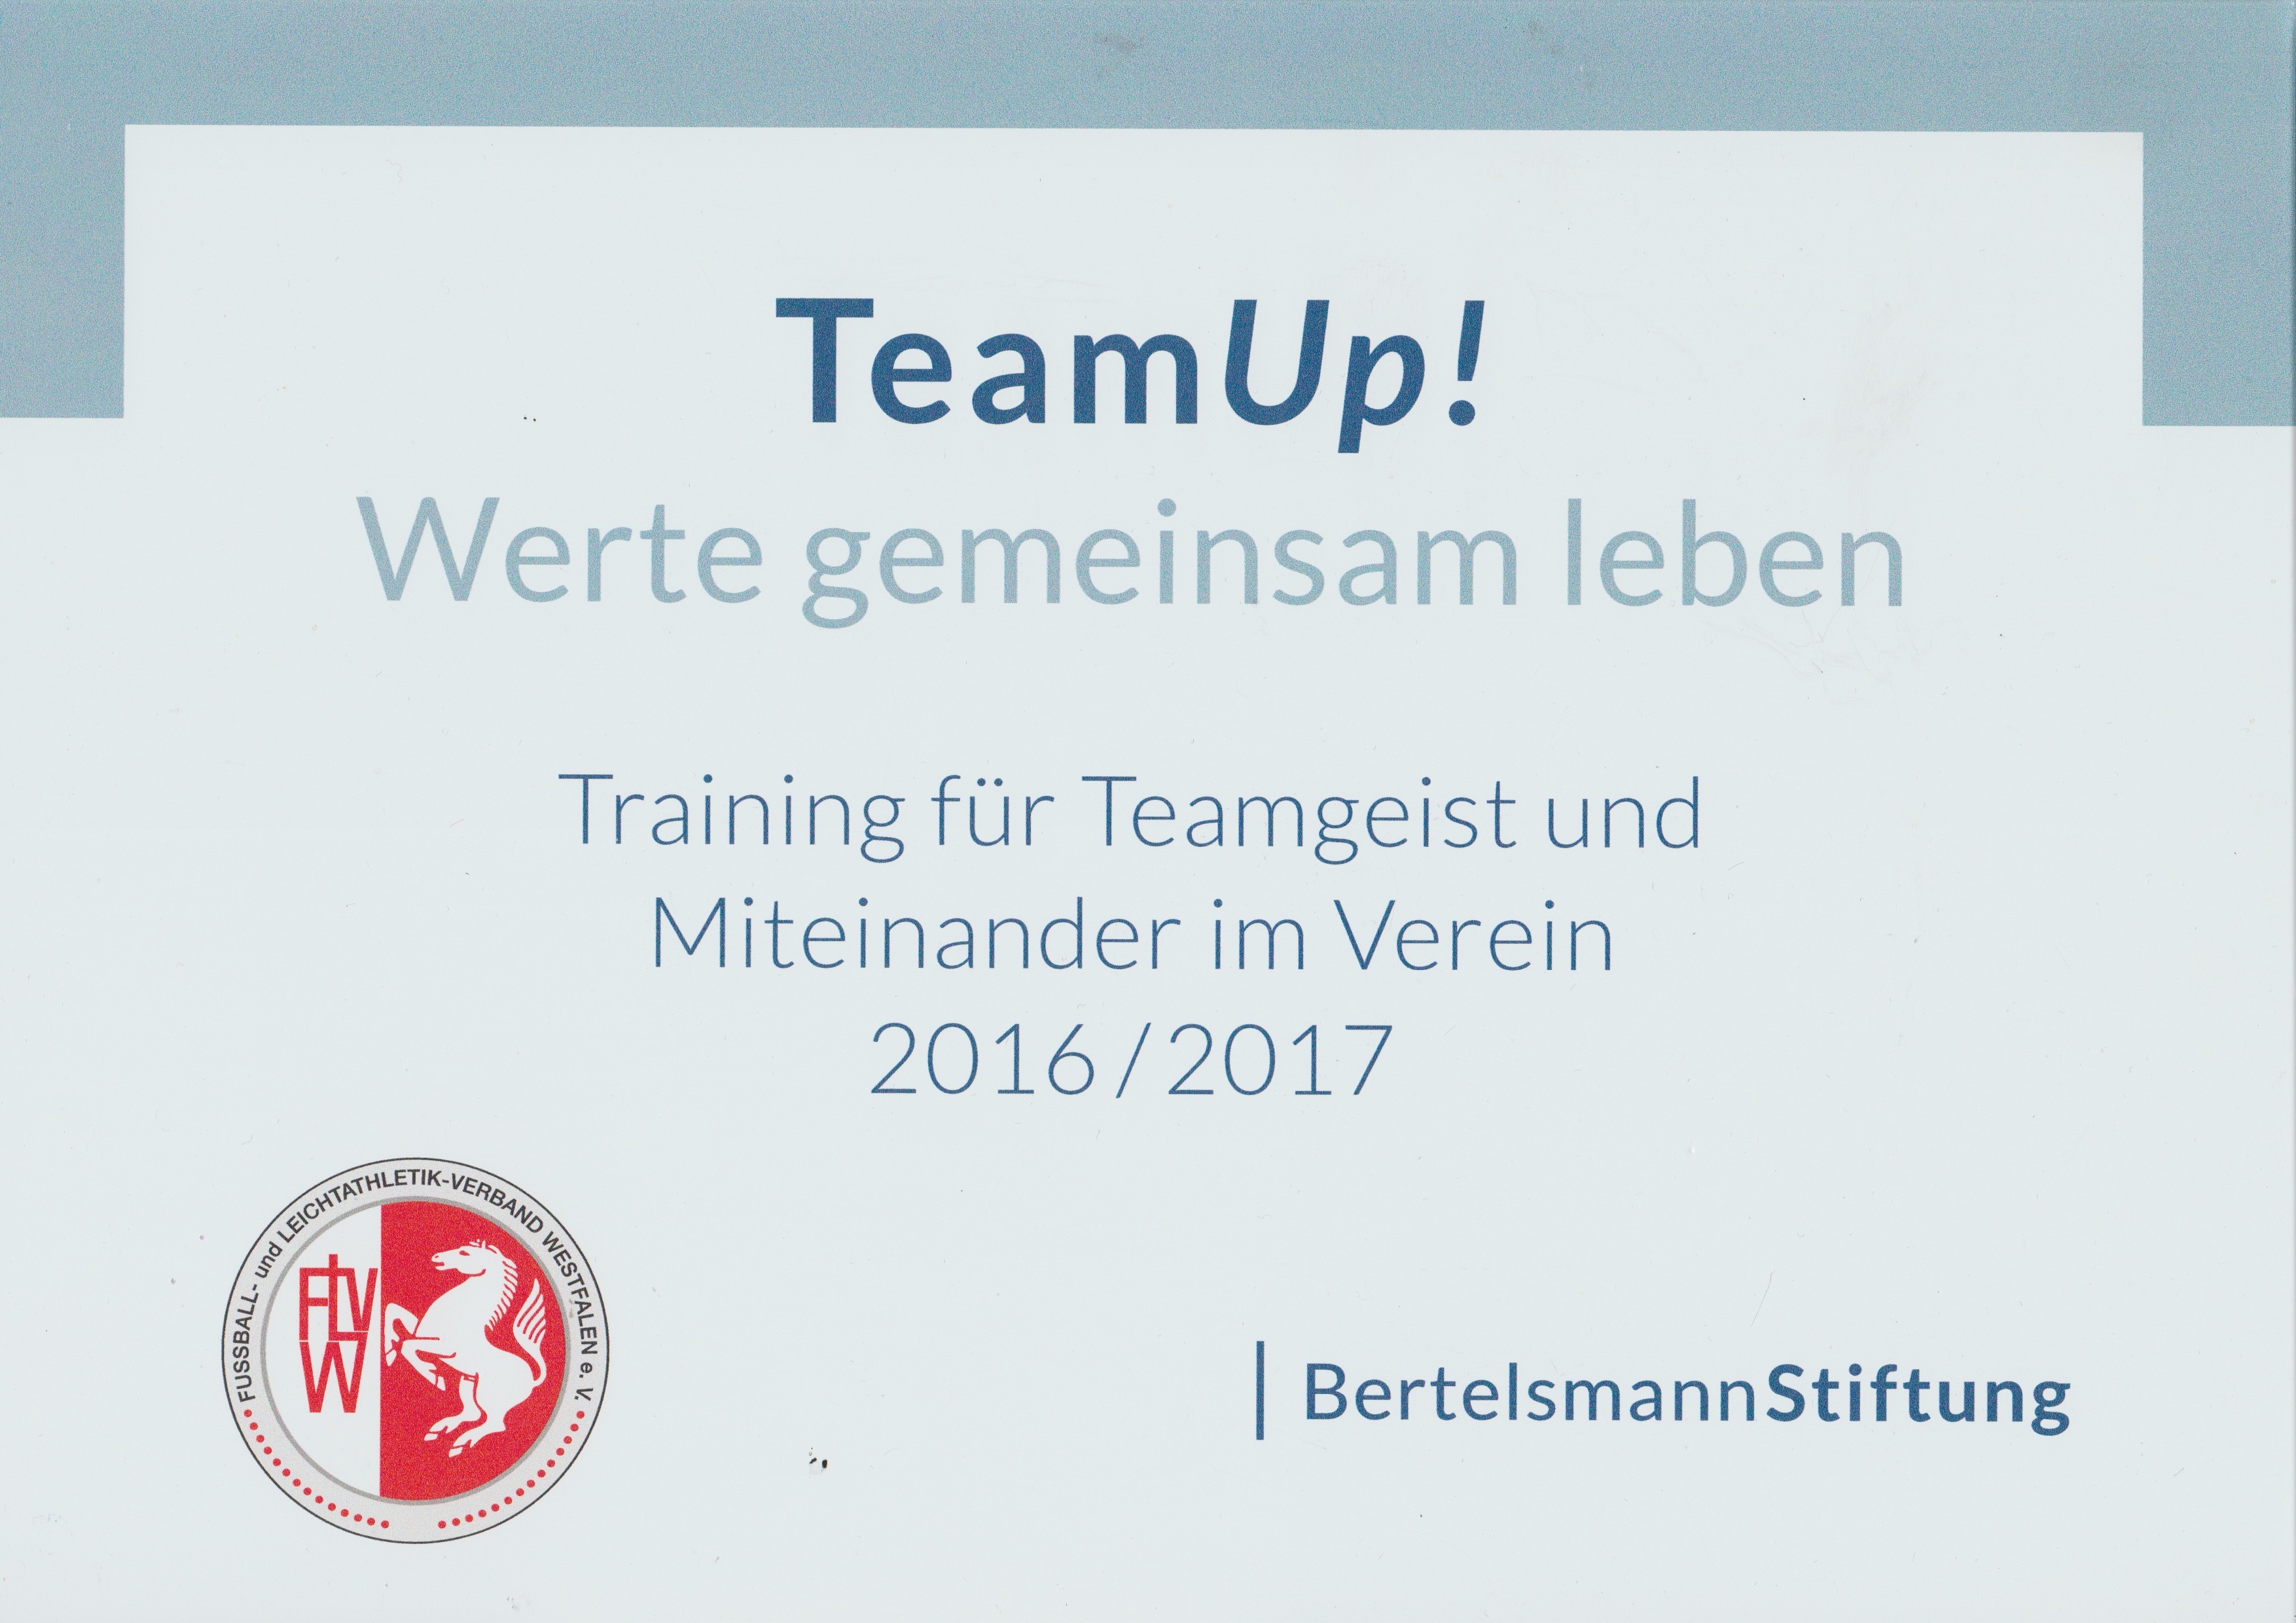 TeamUp! 2016/2017